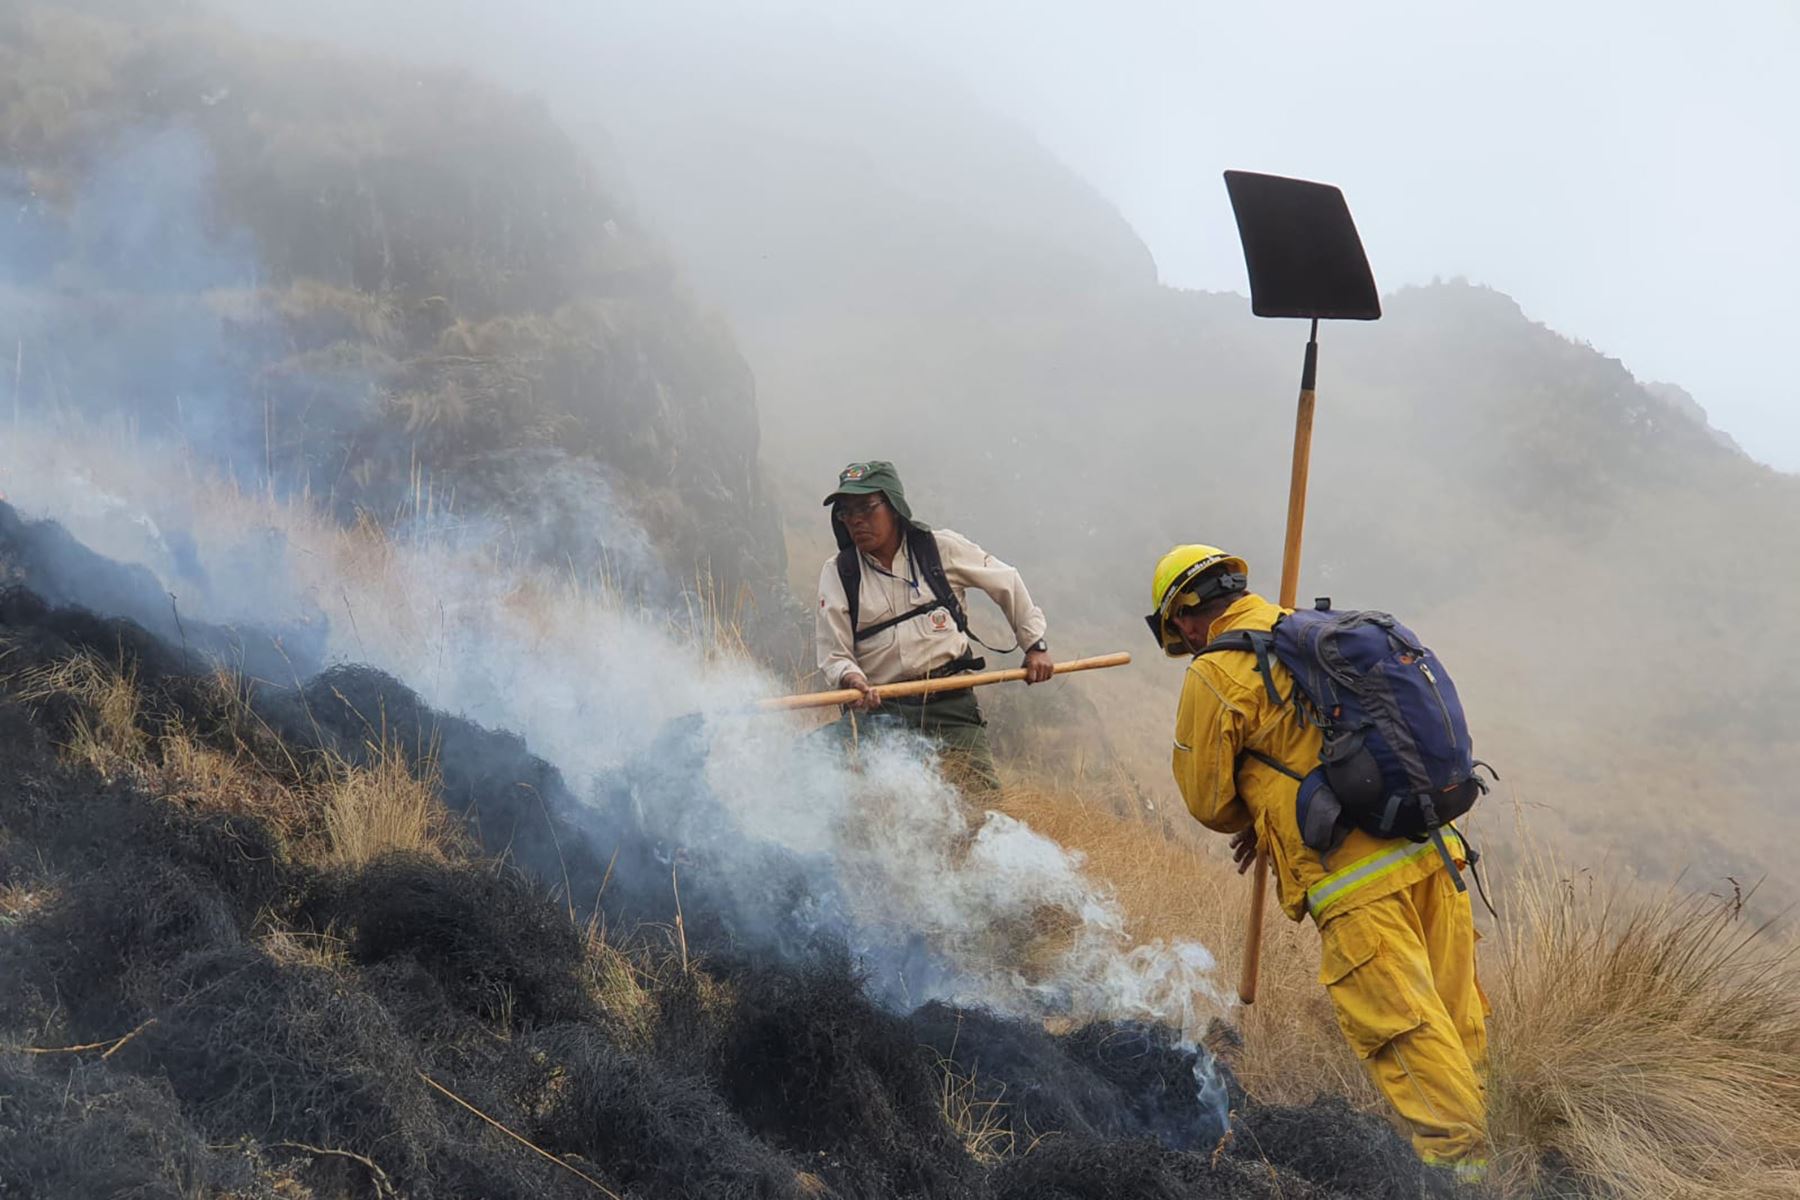 Bomberos forestales y brigadistas lograron control el incendio forestal que afectó miles de hectáreas de cobertura natural en provincia de Quispicanchi, en Cusco. ANDINA/archivo